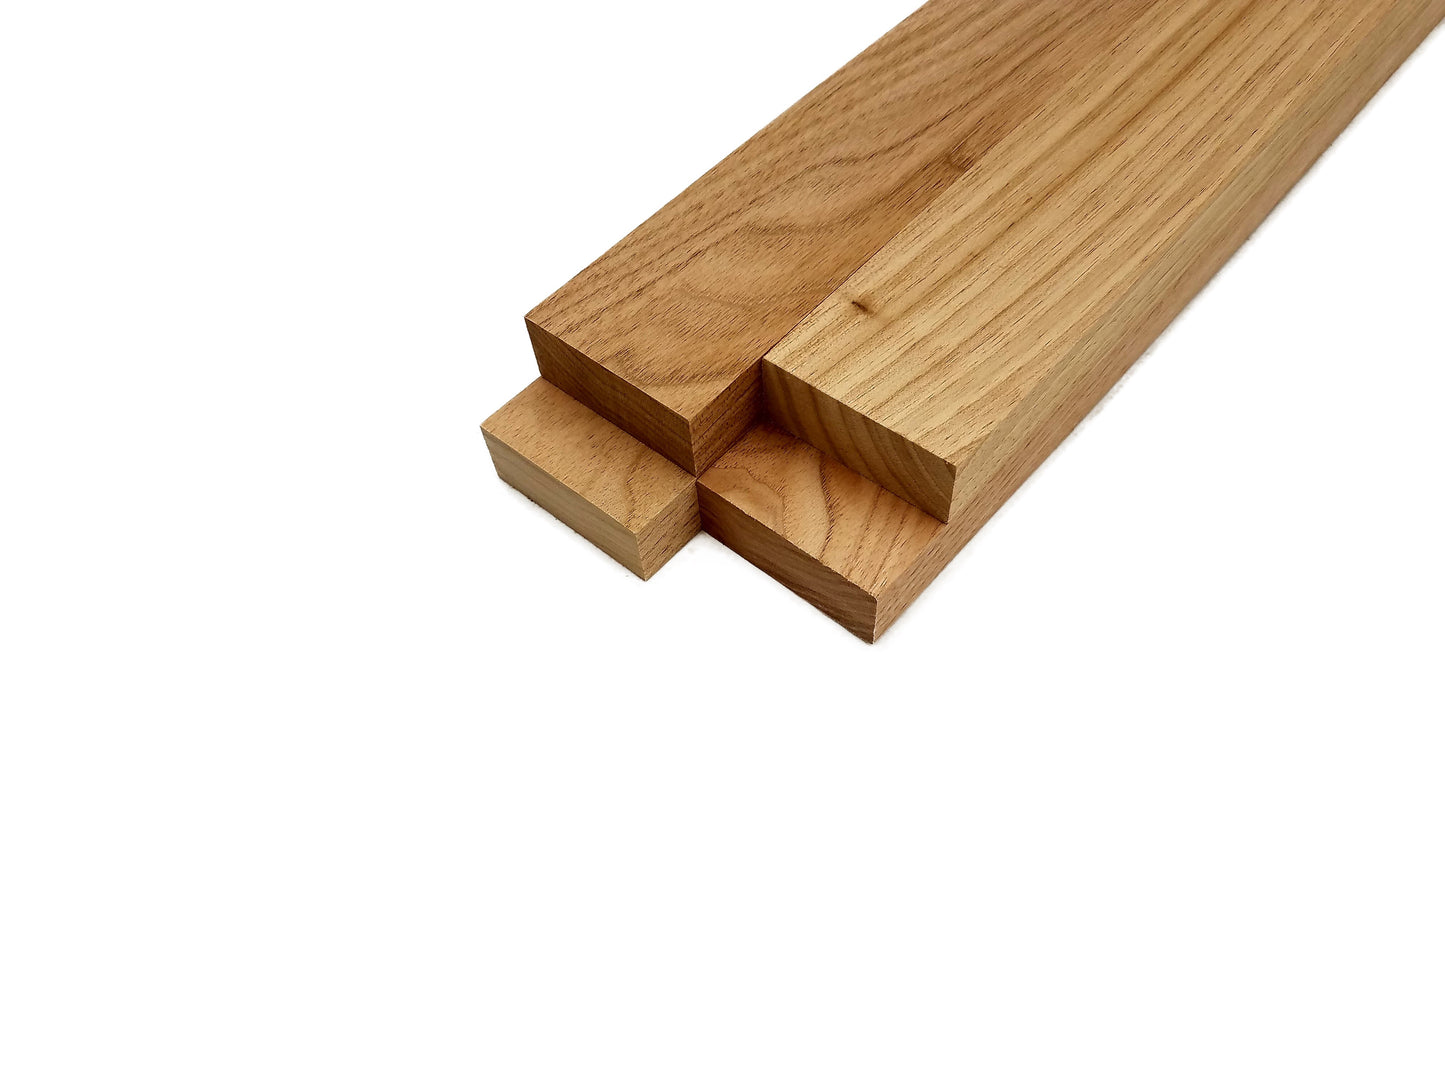 Butternut Lumber Board - 3/4" x 2" (4 Pcs)